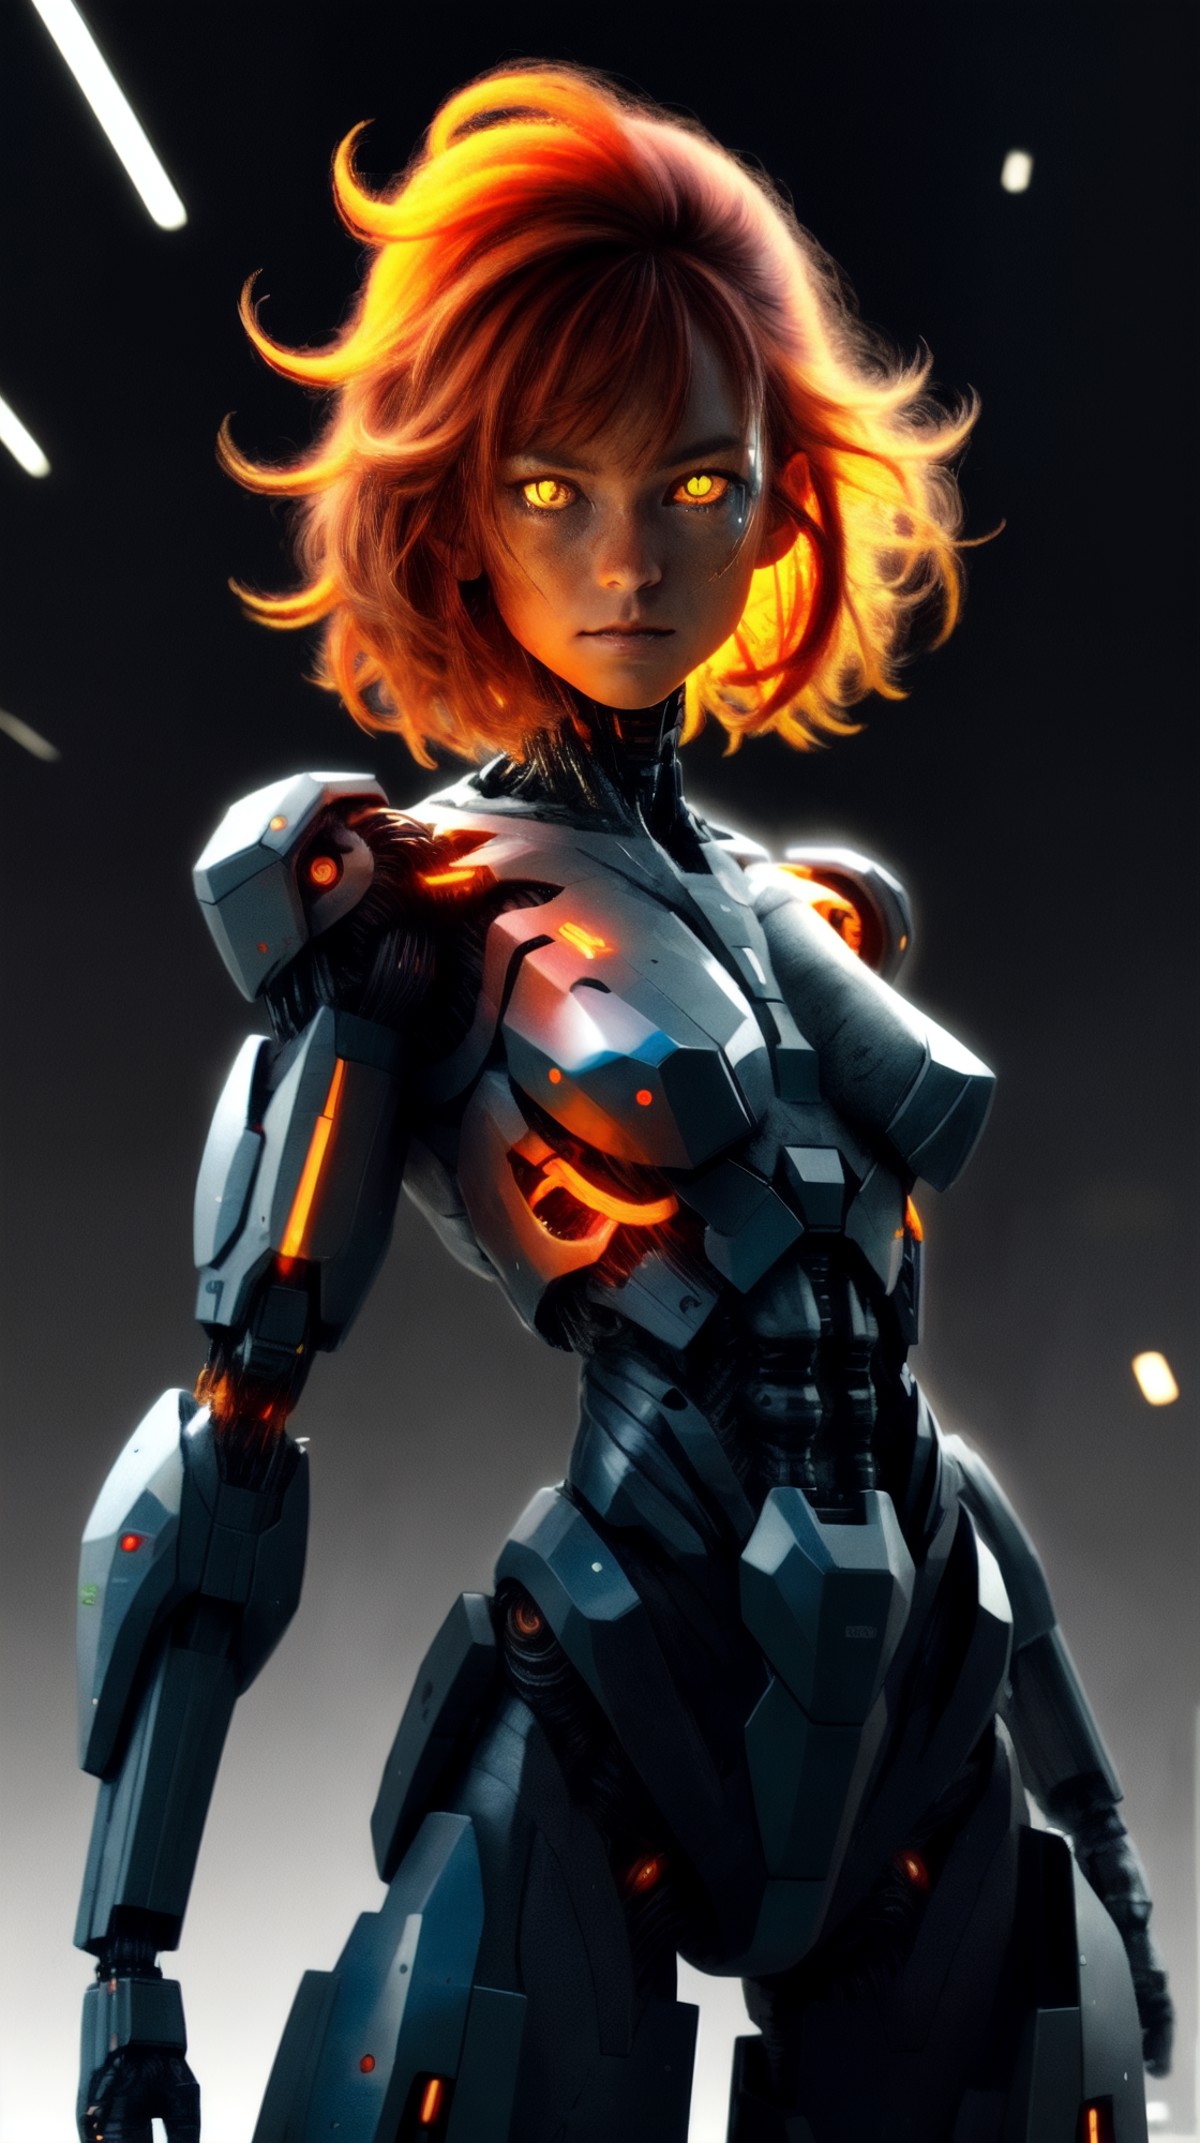 a cyborg, <lora:nanoArmor:0.7>